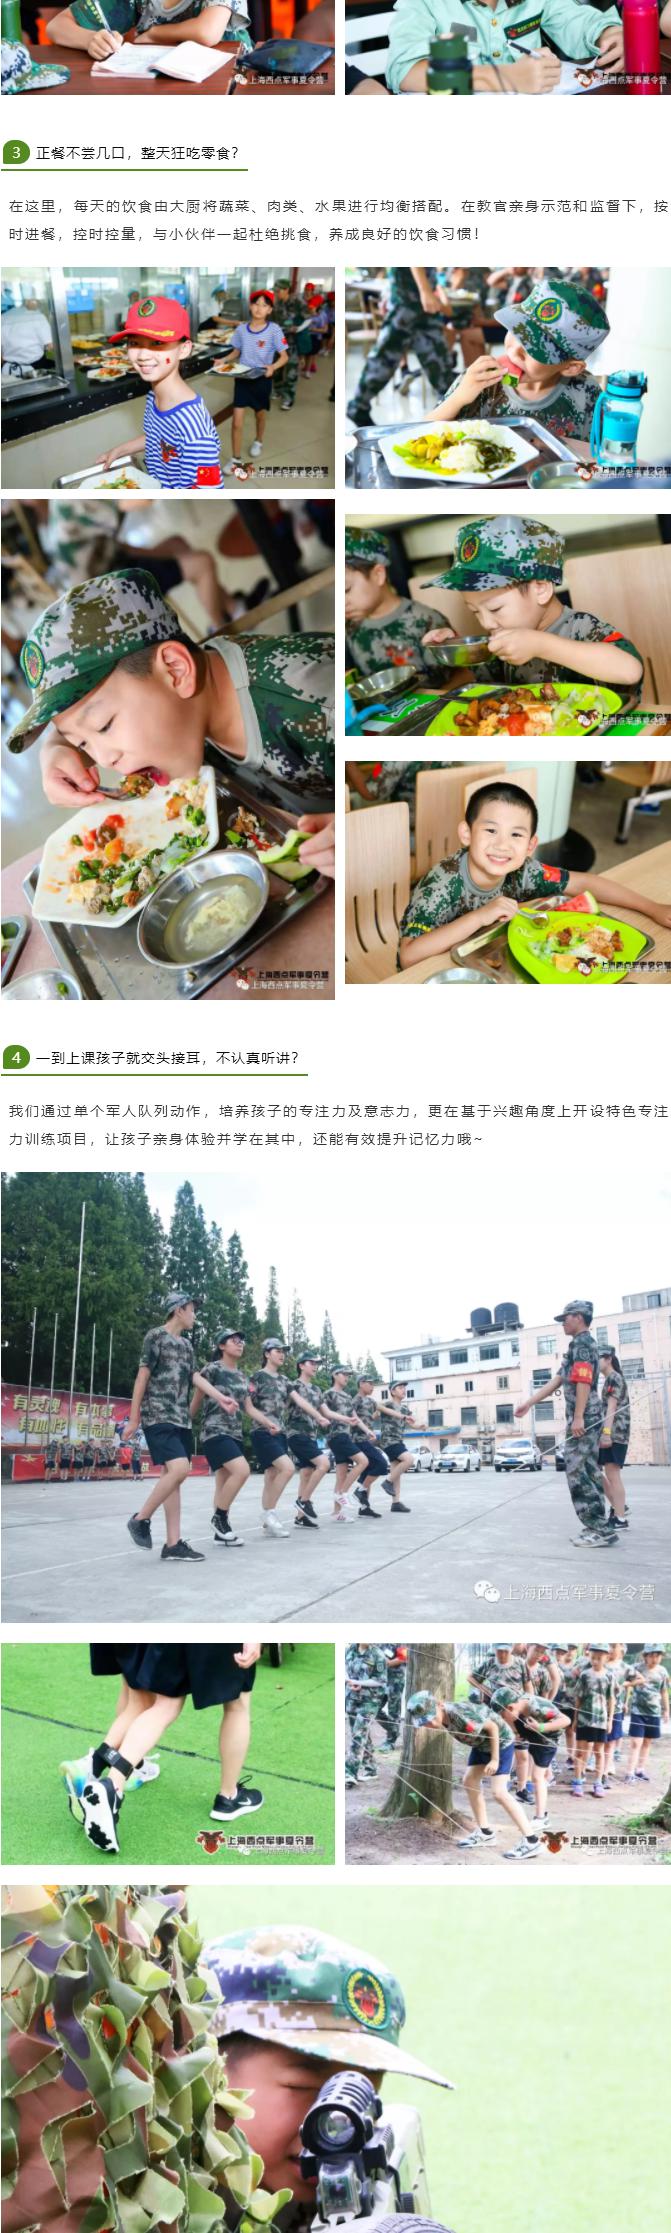 上海西点开学备战营让孩子赢在开学